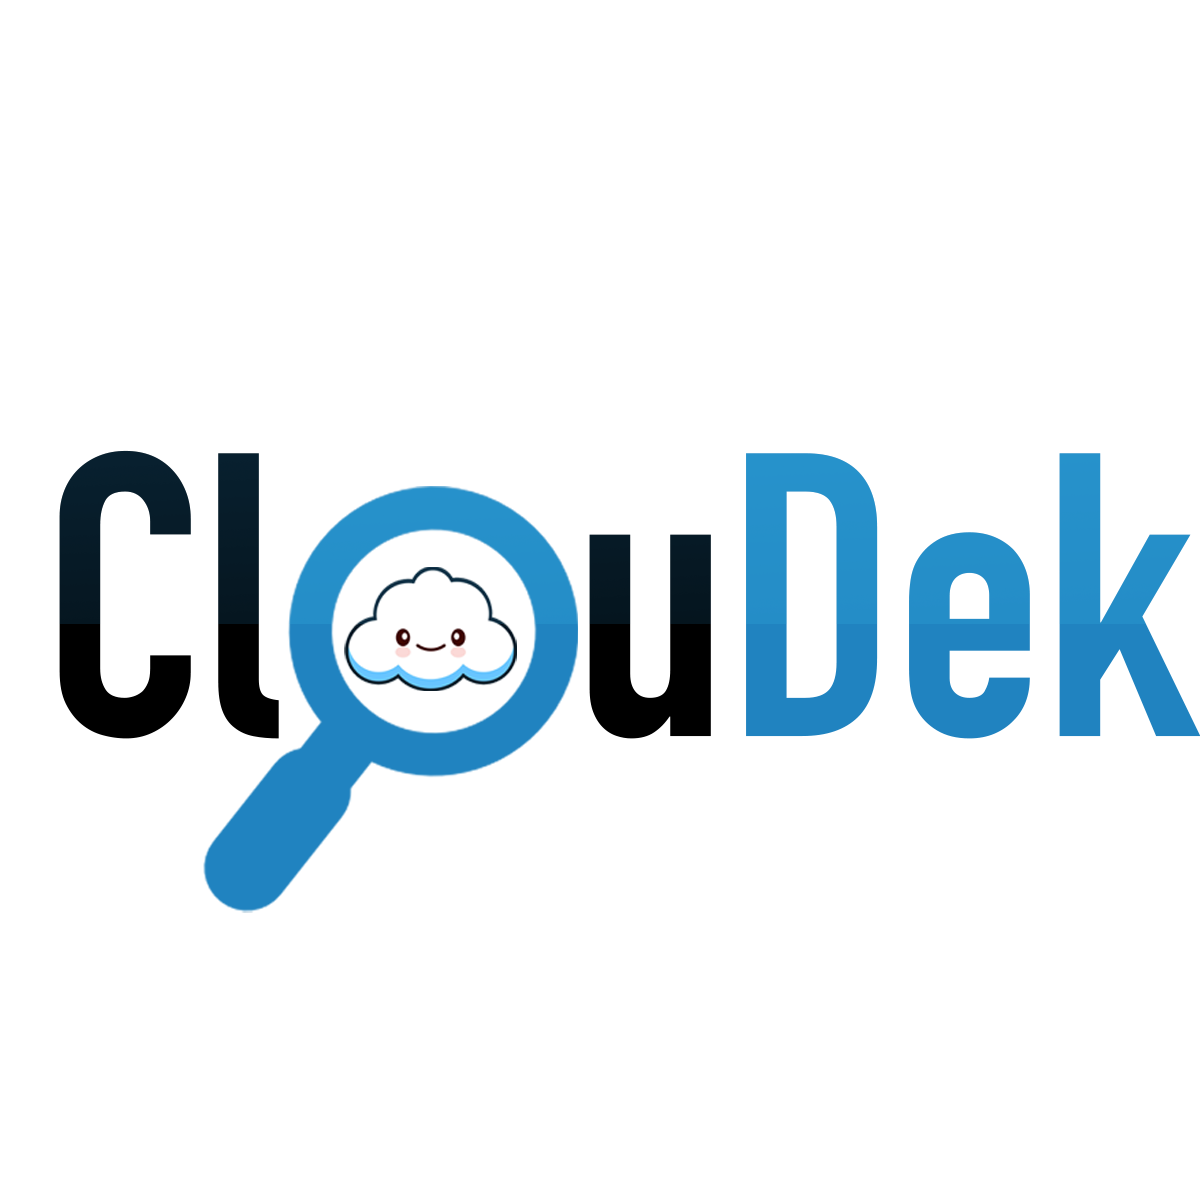 ClouDek Logo